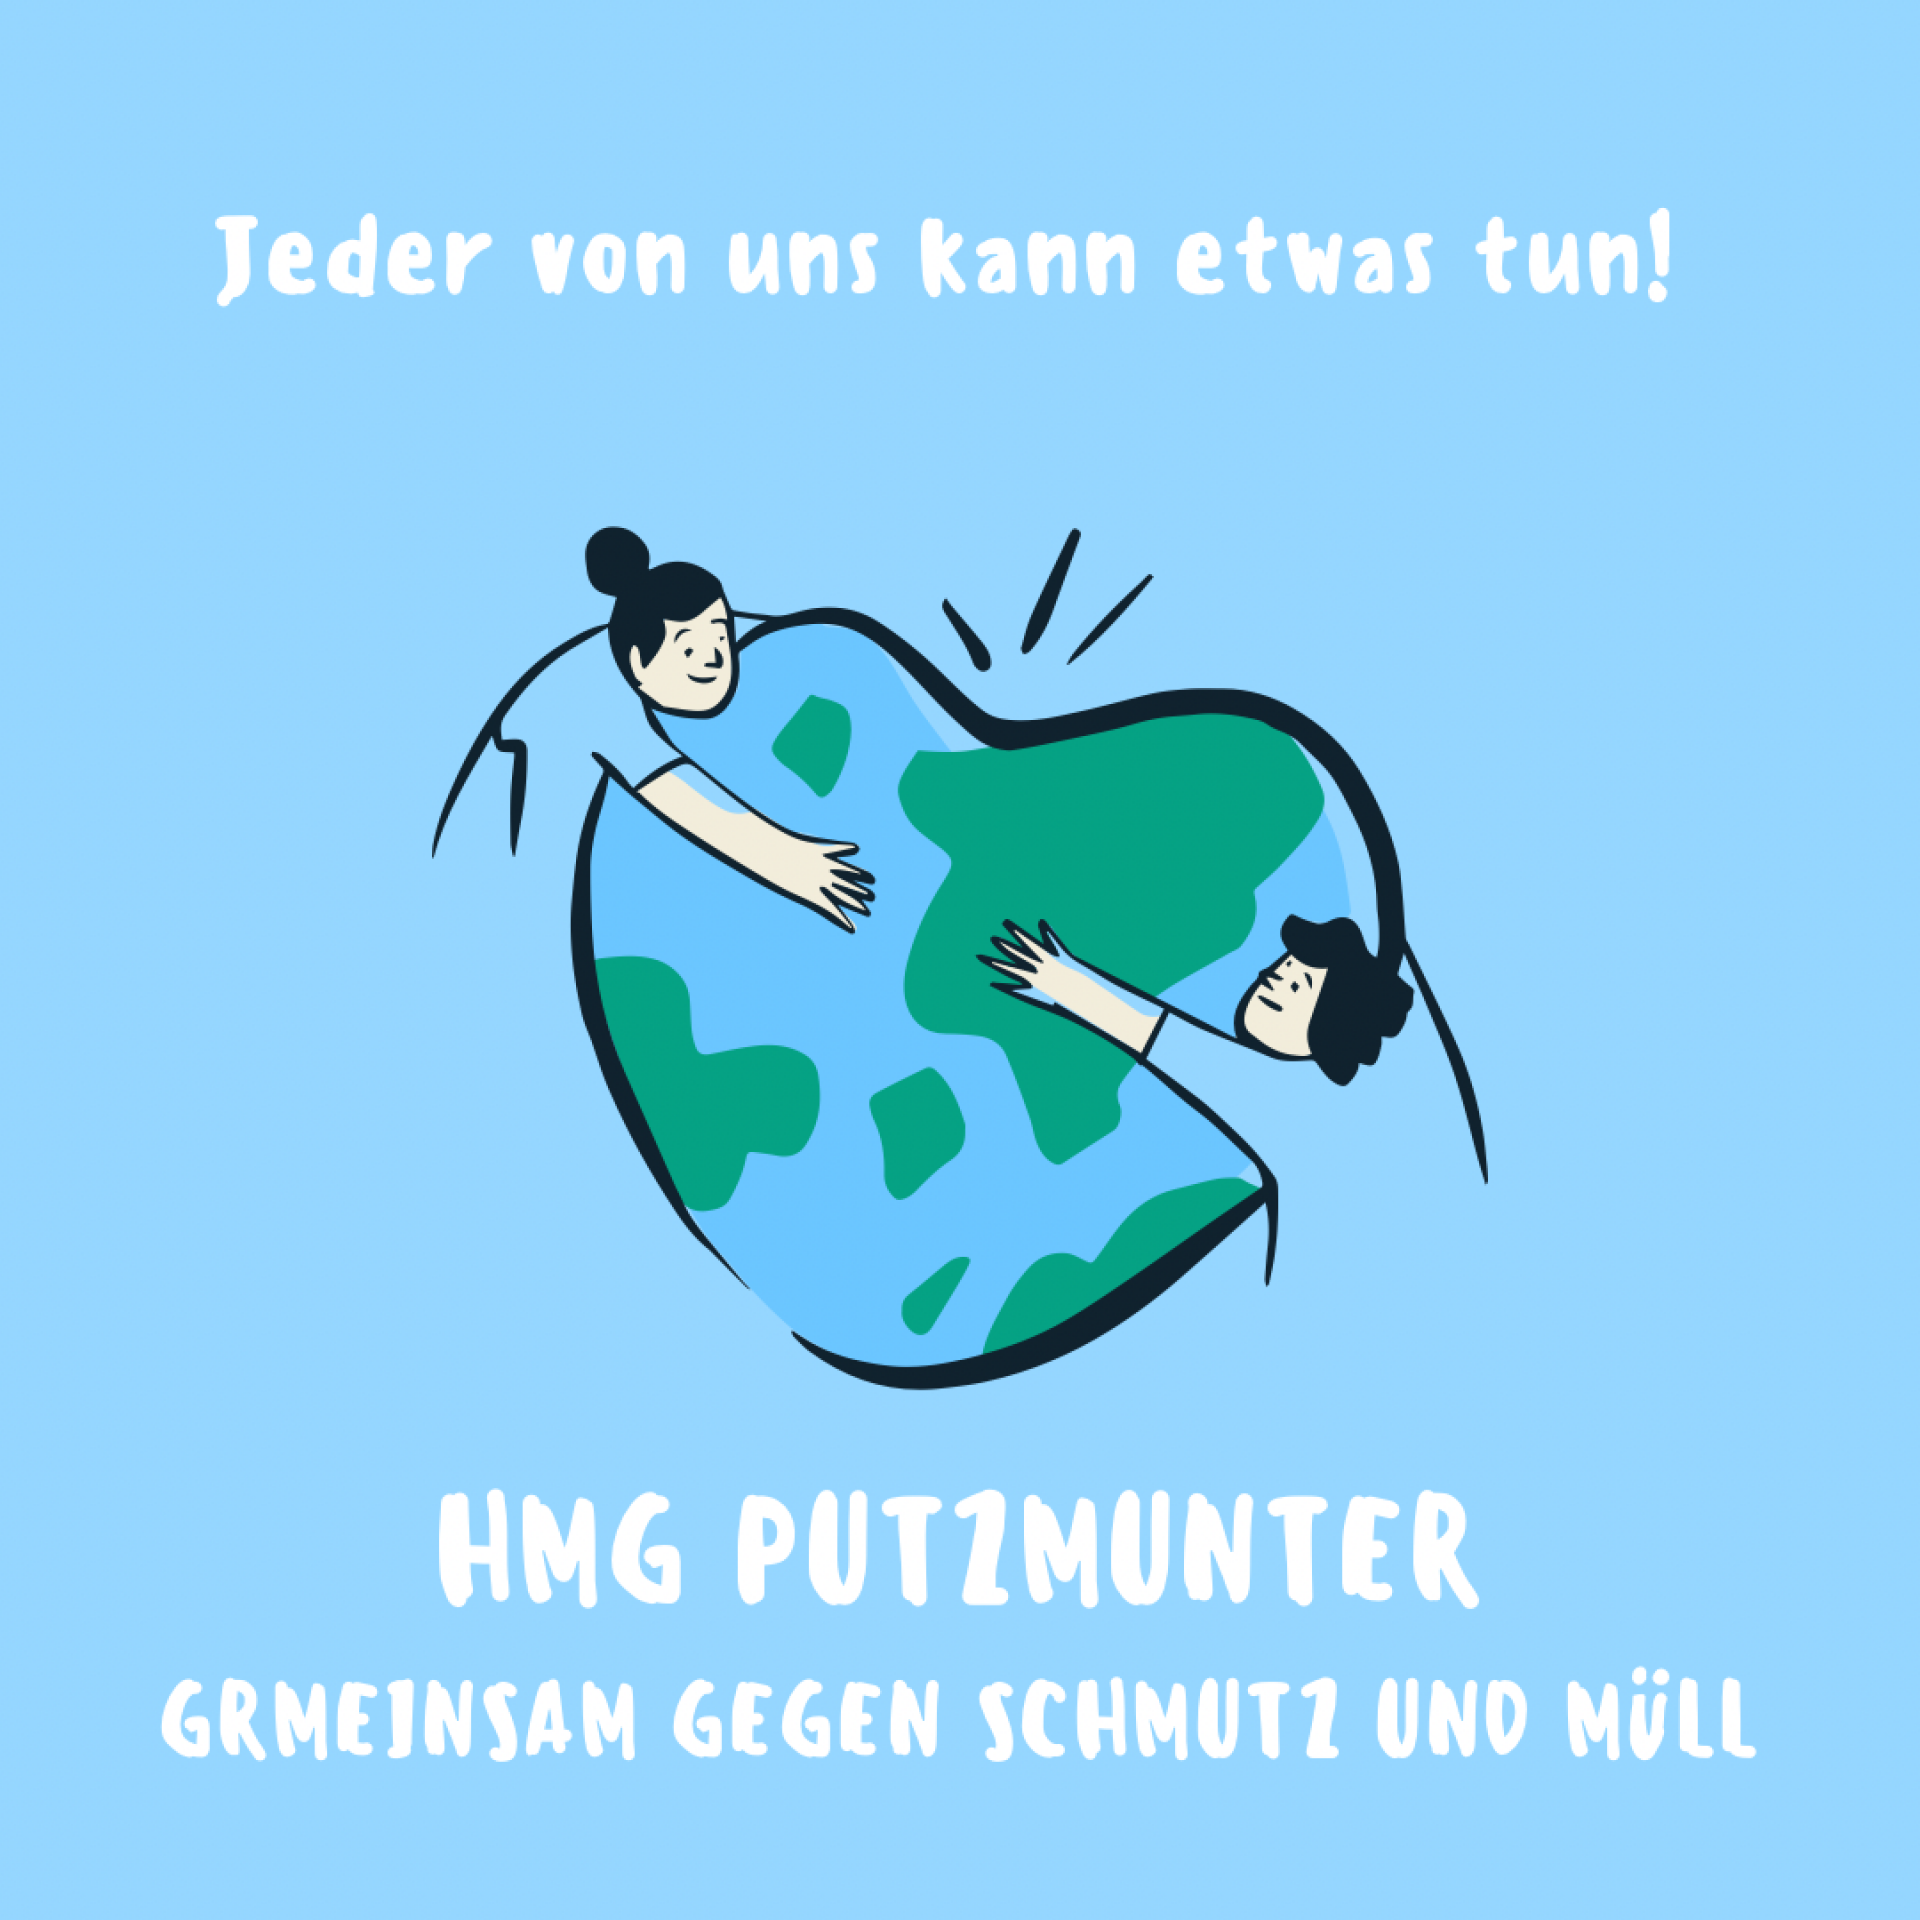 HMG putzmunter - Gemeinsam gegen Schmutz und Müll